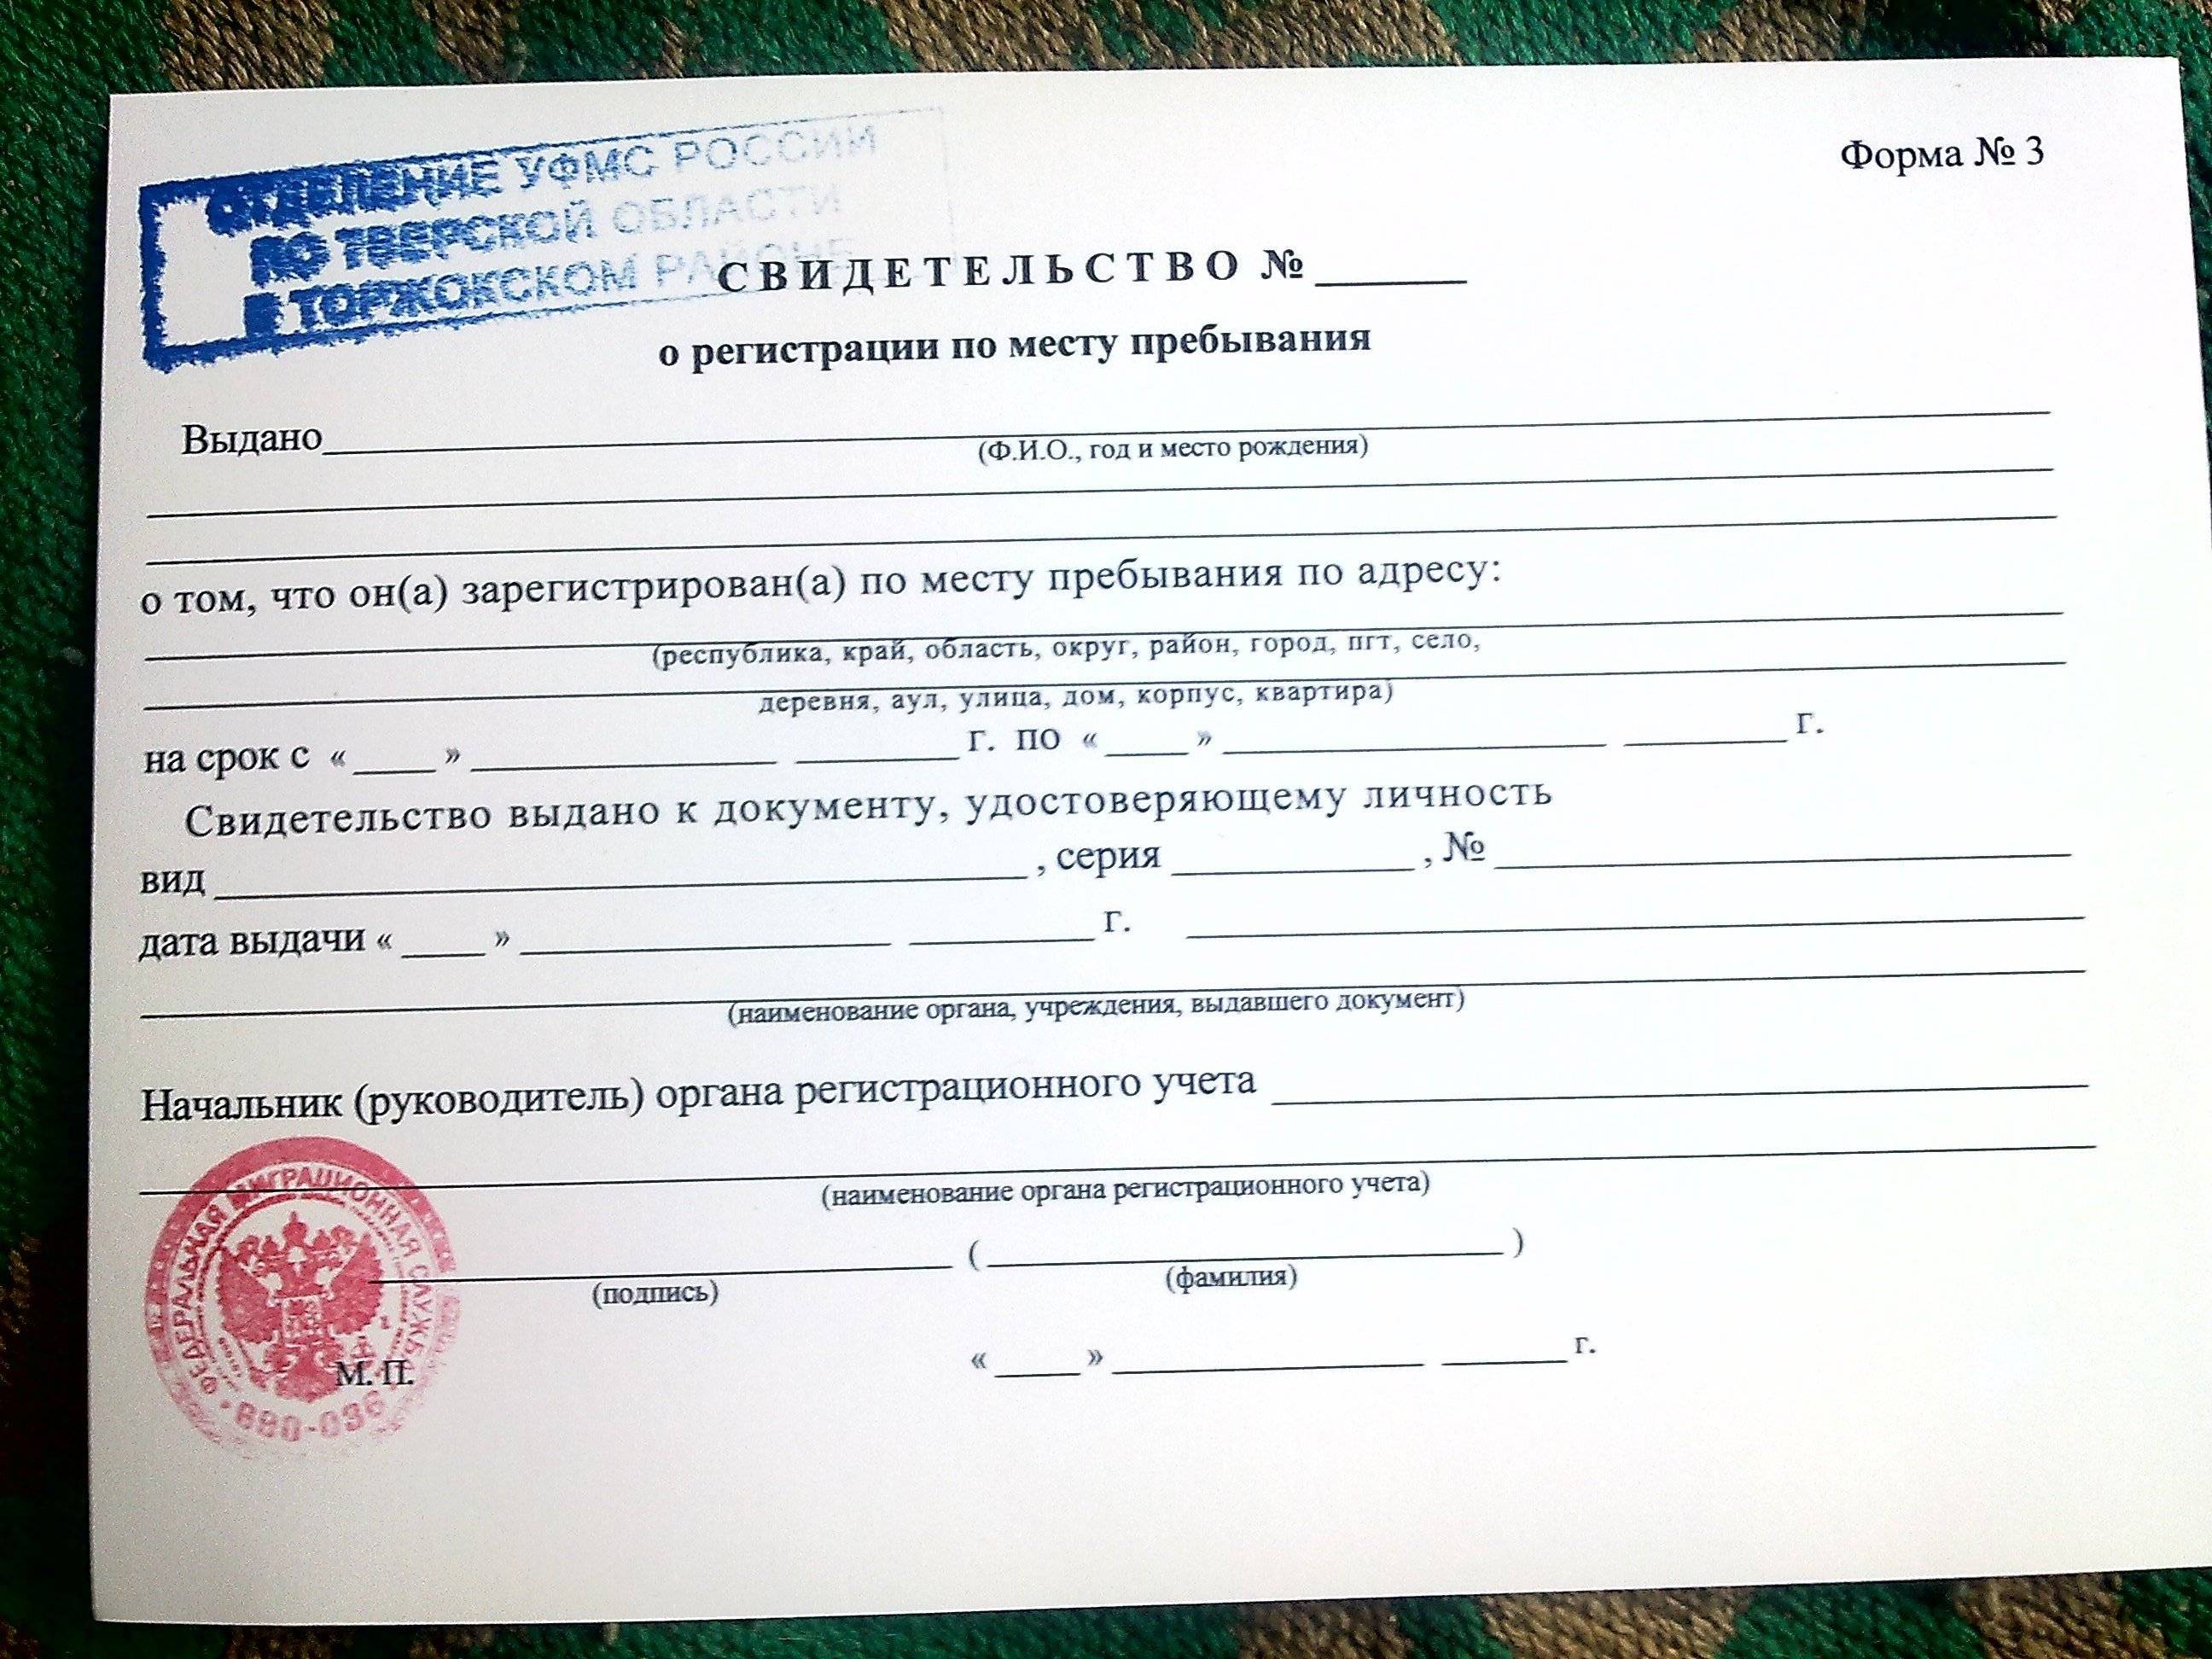 Сделать регистрацию в москве msk propiska. Временная регистрация. Как выглядит вре еннаяпроптска. Как выглядит временная прописка. Свидетельство о временной регистрации по месту пребывания.